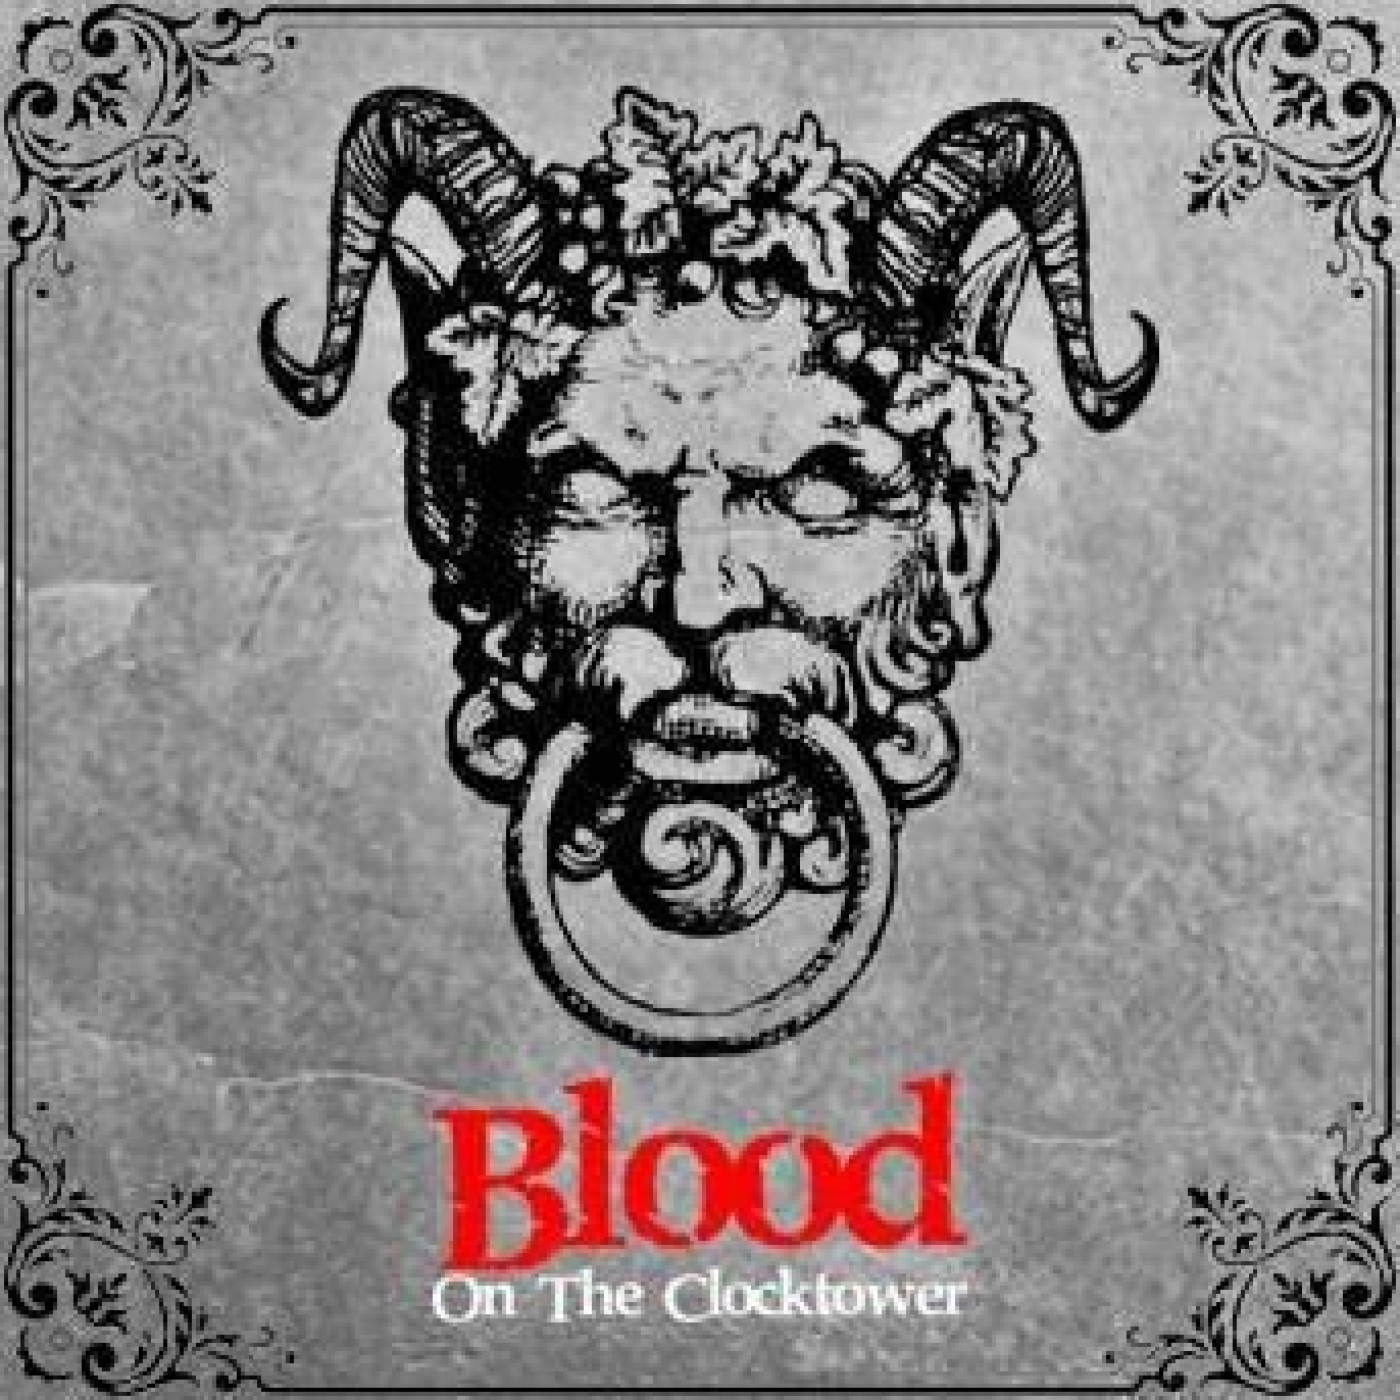 Episodio 40 - Blood on the Clocktower, el cocinero mentiroso, conversaciones infinitas y la promesa del blip